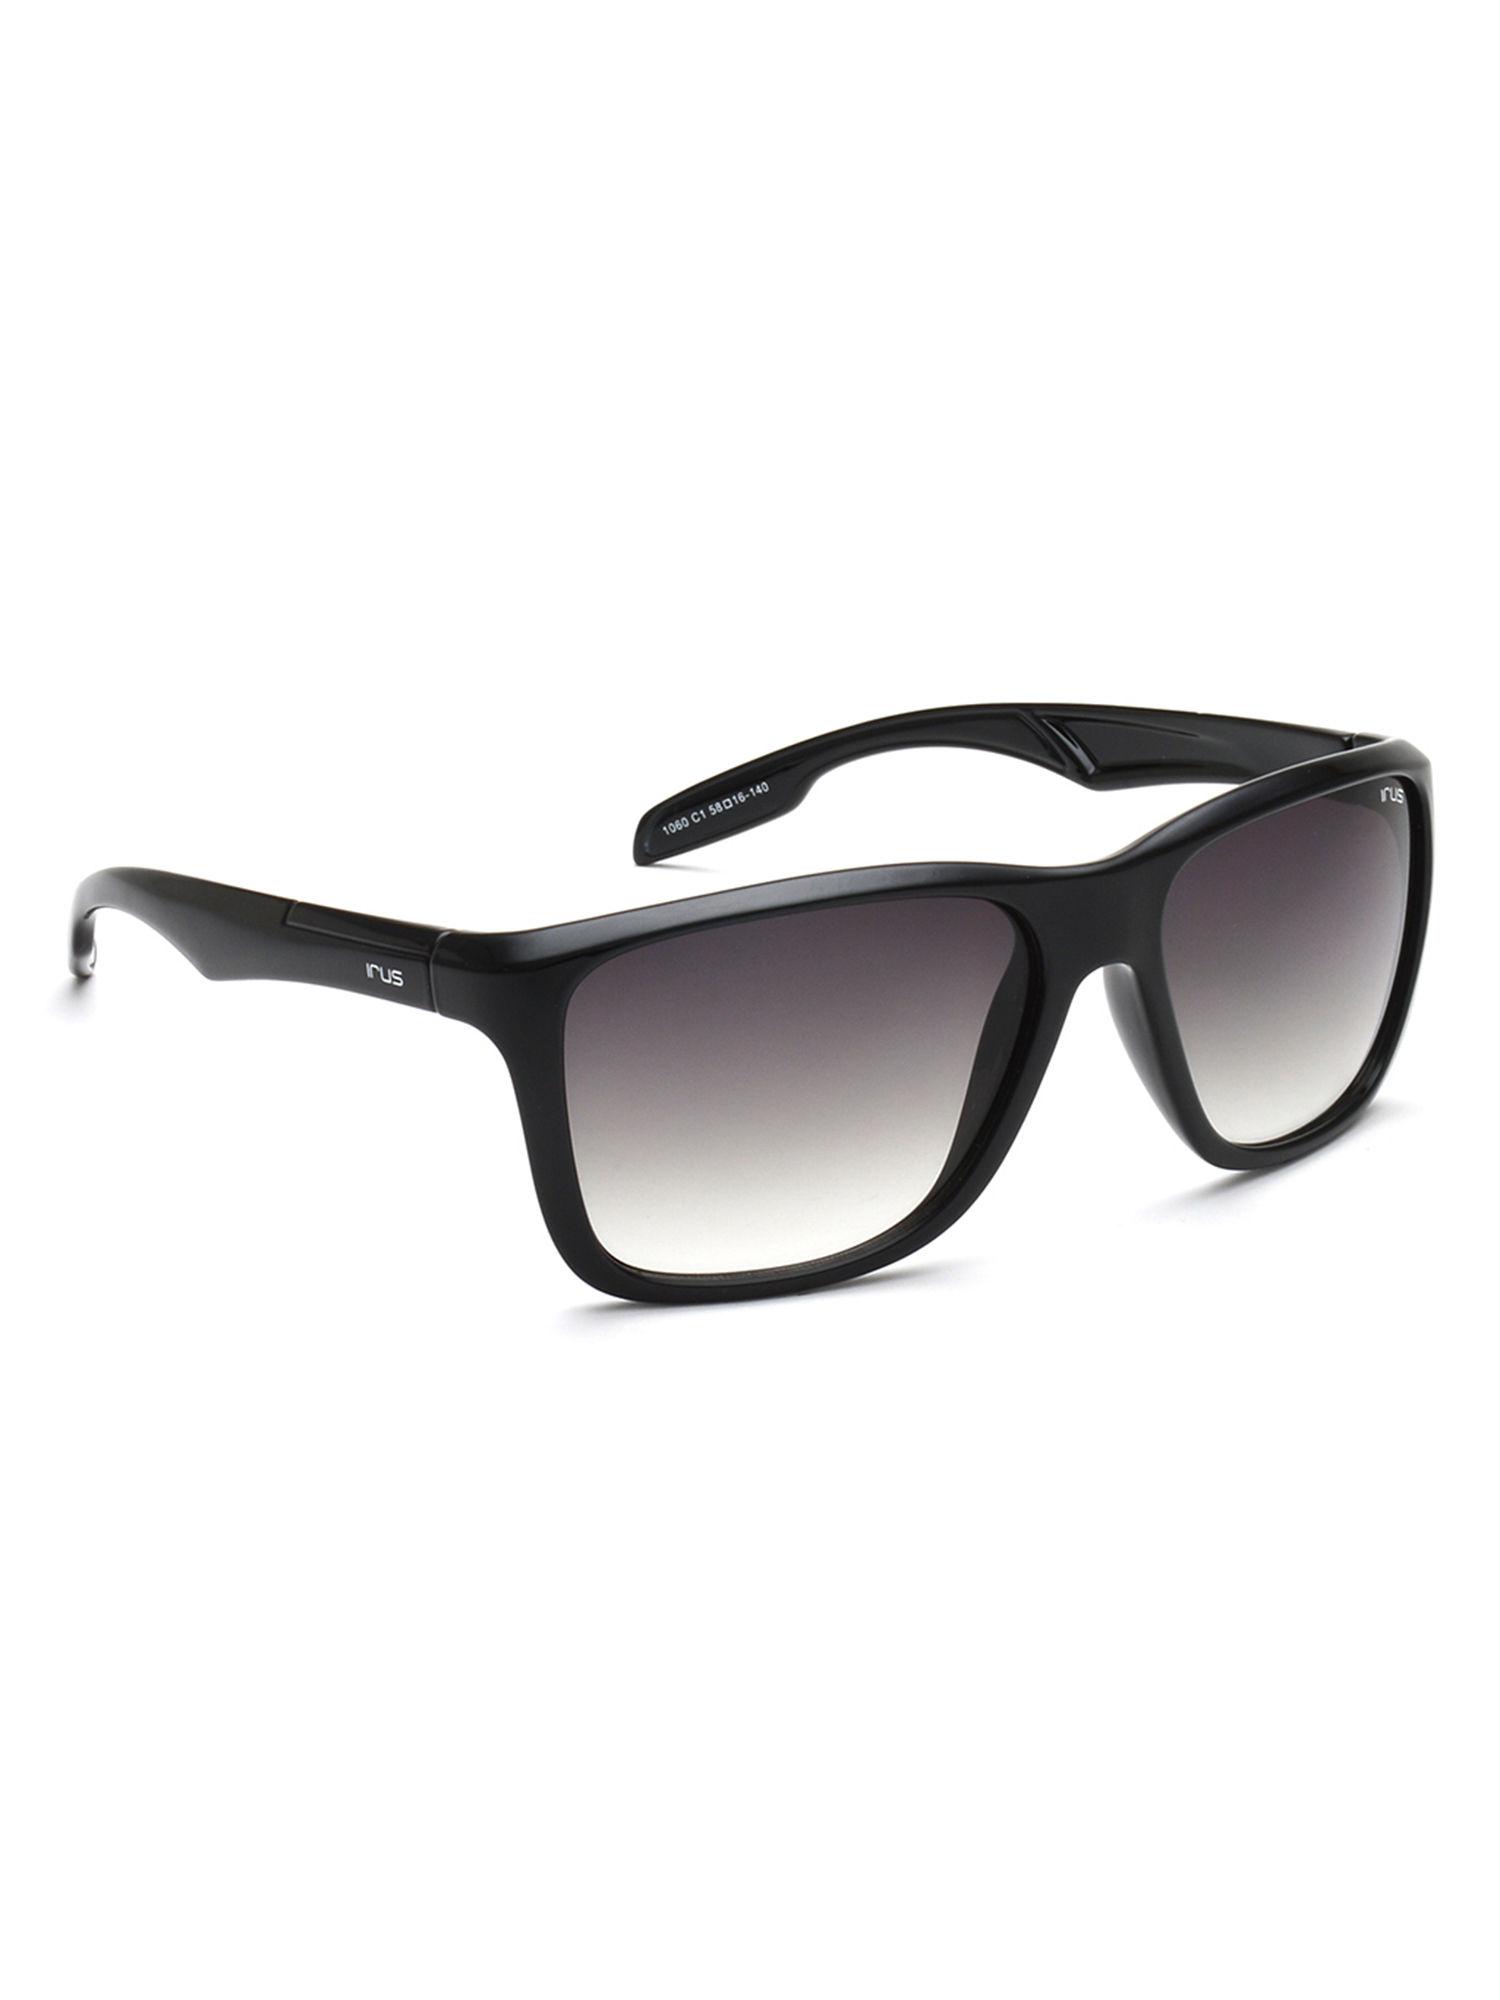 S1060 C1 58 Sunglasses IRS1060C1SG